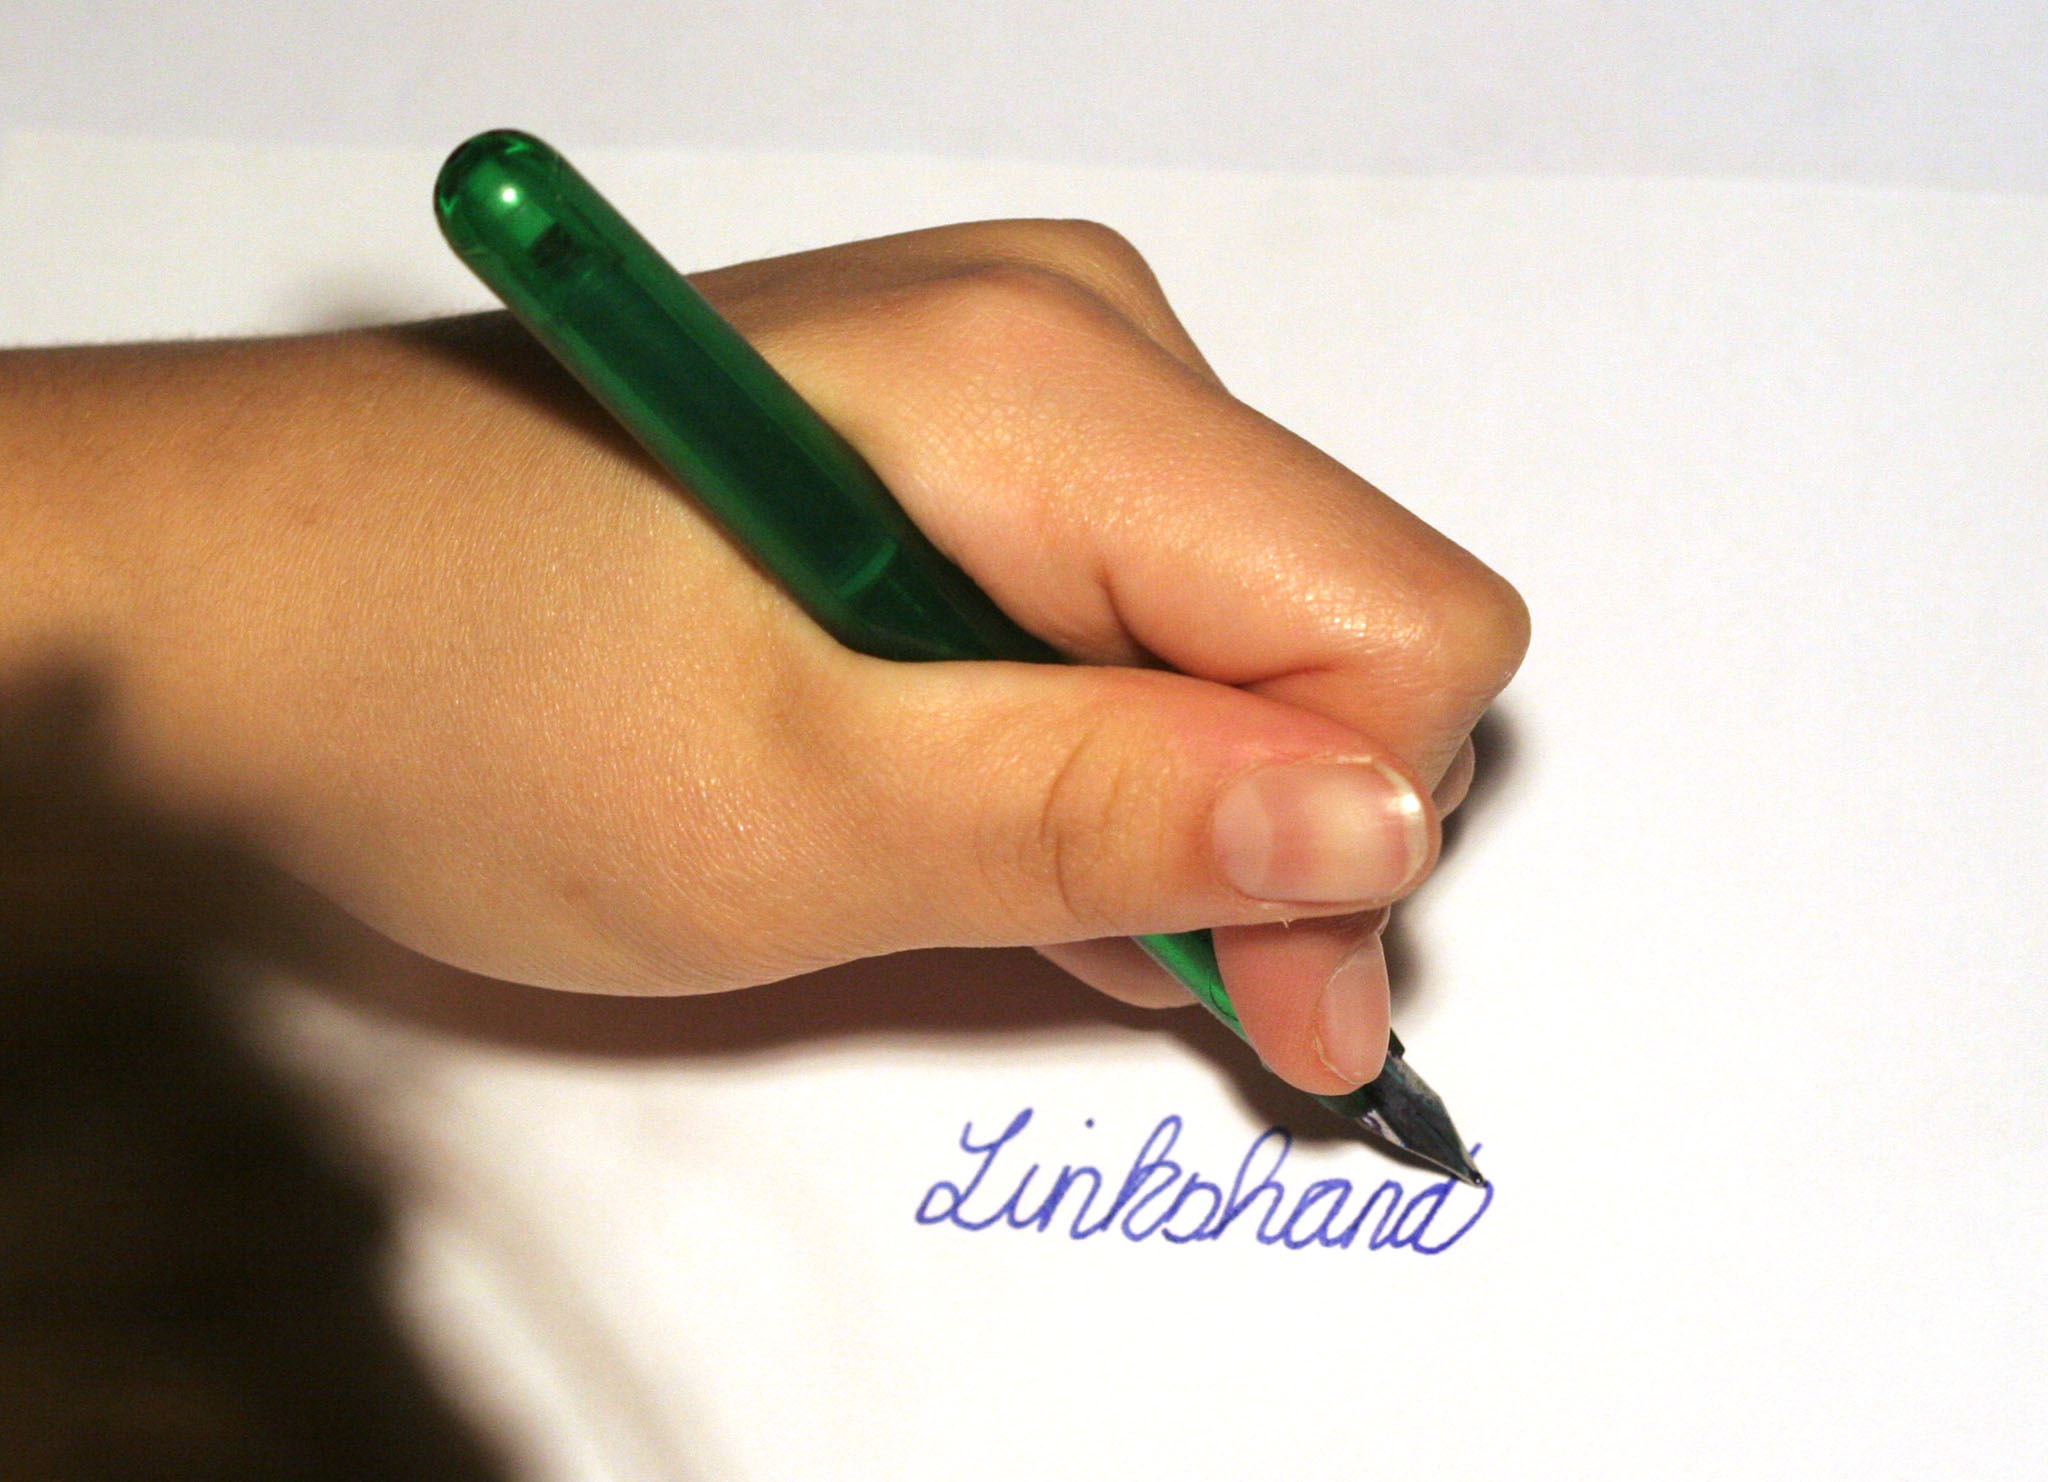 improve my child's handwriting